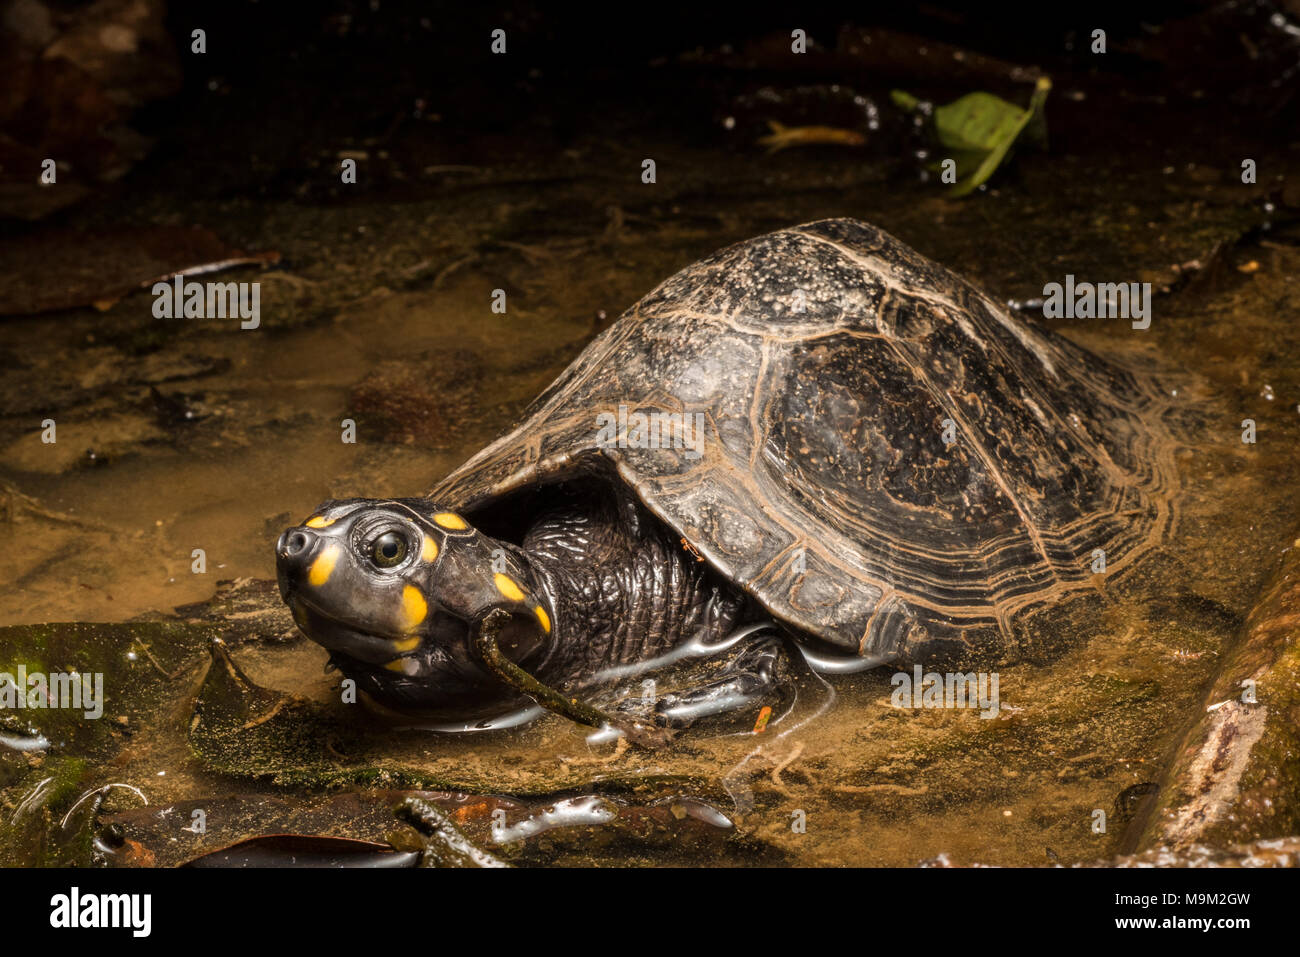 La tartaruga d'acqua dolce minacciata, il sideneck a testa gialla (Podocnemis unifilis), dal Sud America. Foto Stock